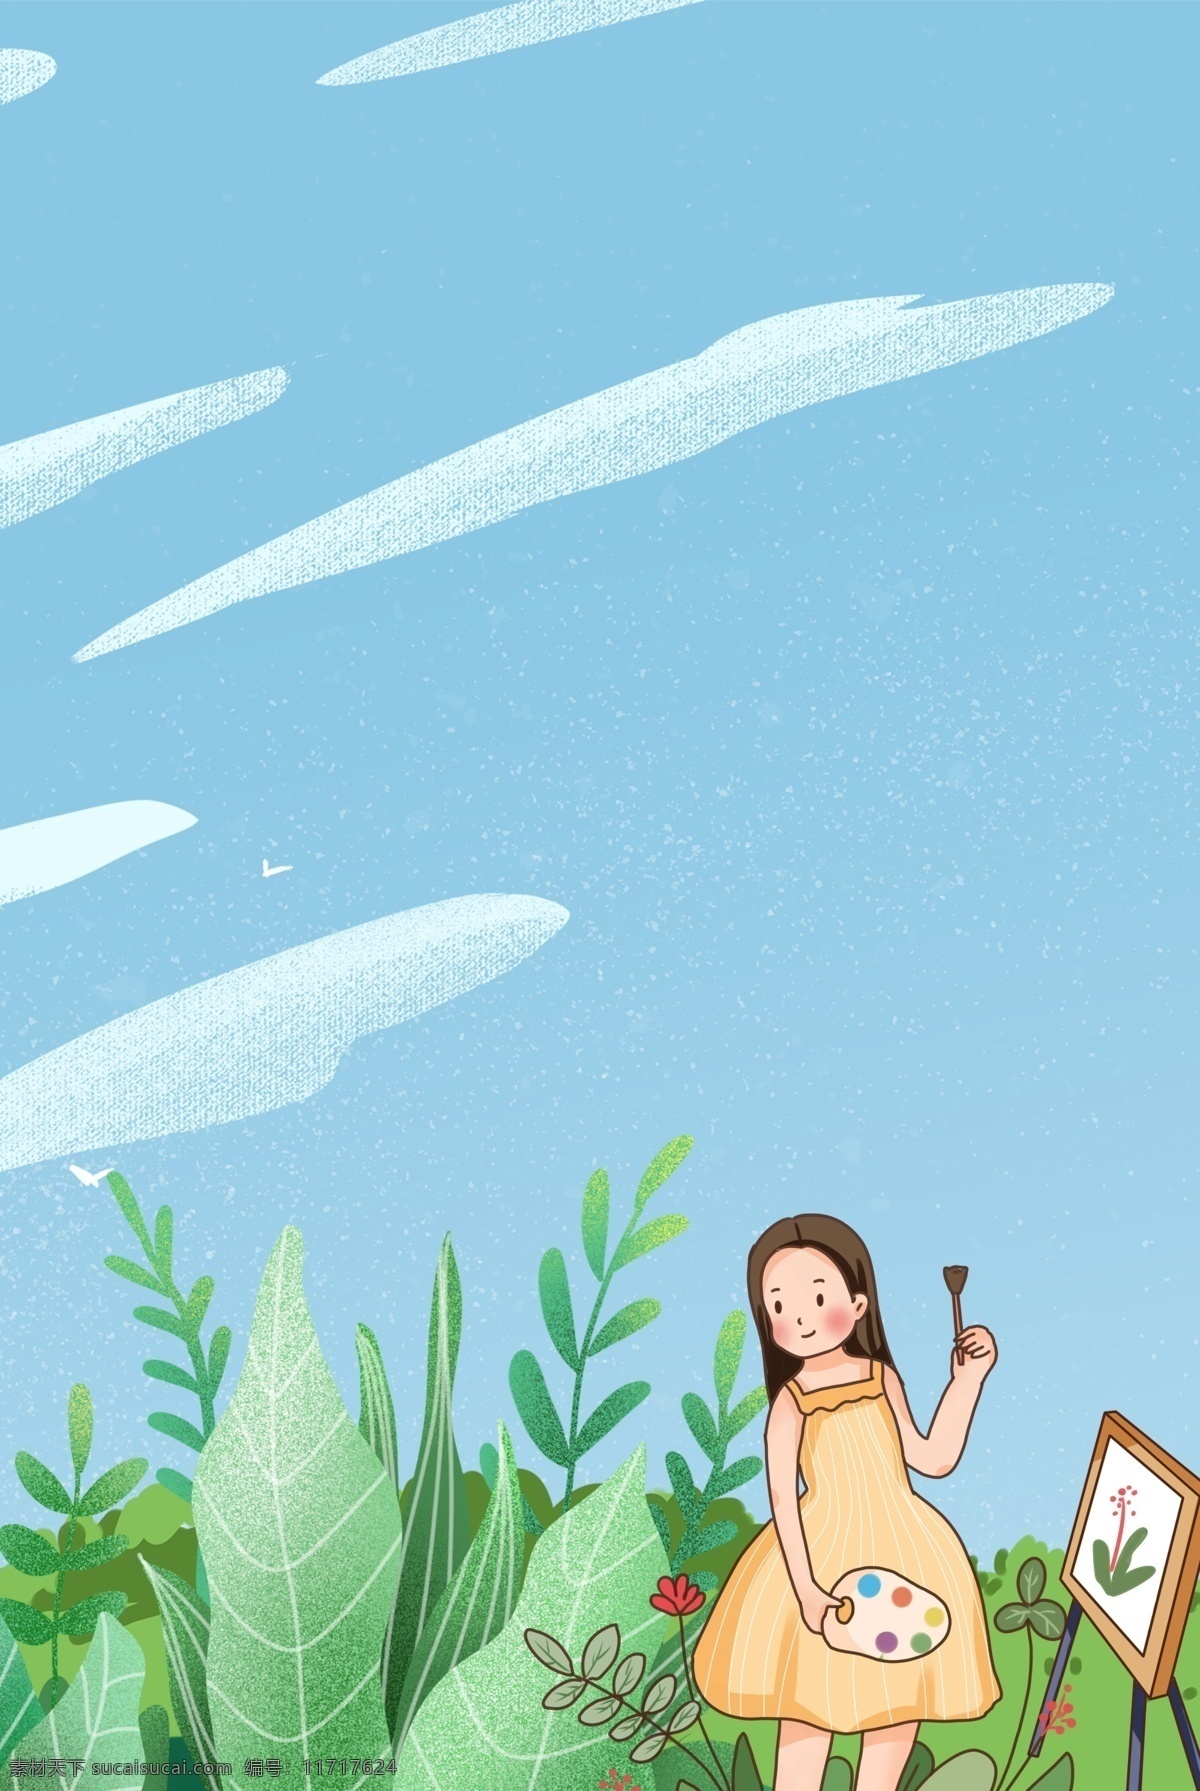 卡通 草地 天空 画画 背景 海洋 陆地 海岛 白云 椰子树 海洋动物 海藻 珊瑚 鲸鱼 海底 海星 道路 树 卡通设计